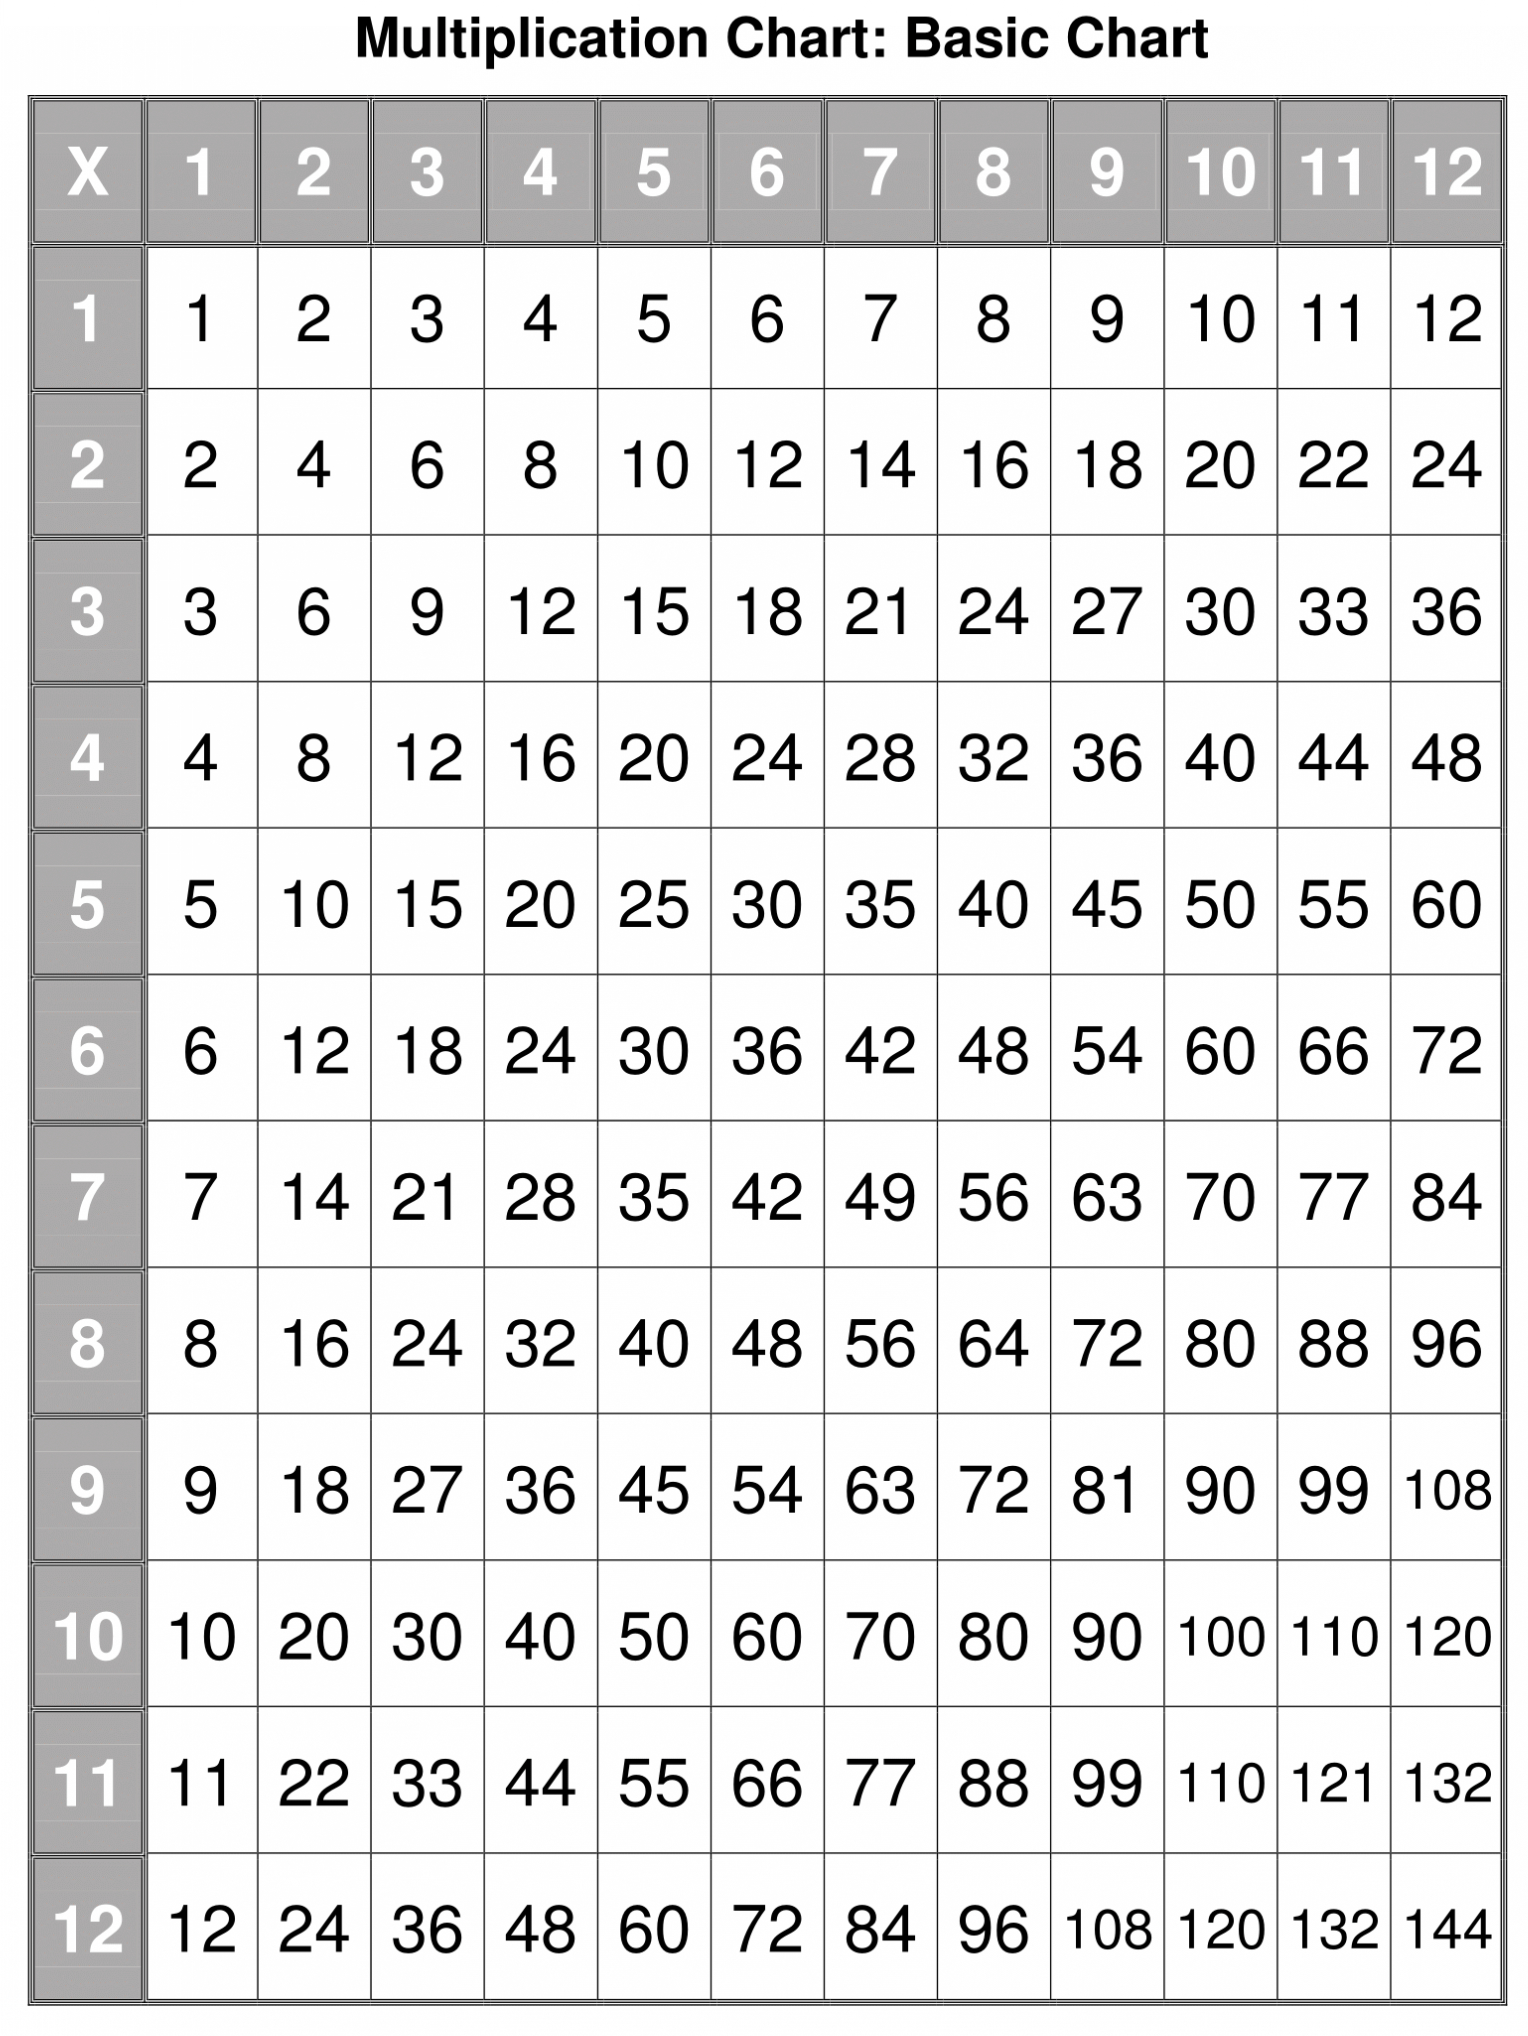 multiplication table chart printable 12x12